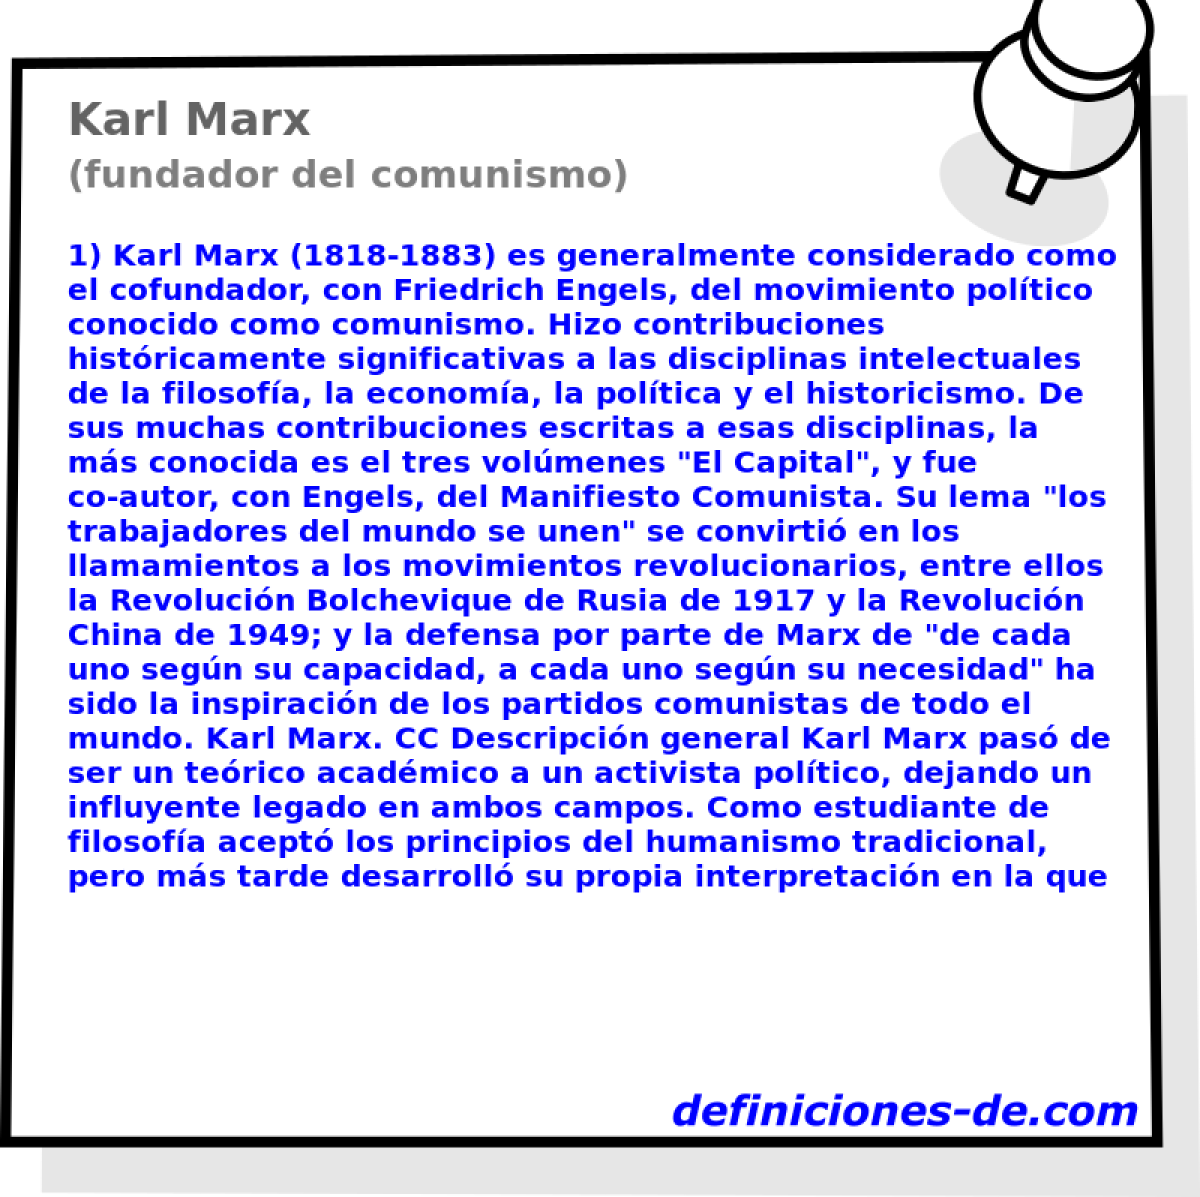 Karl Marx (fundador del comunismo)